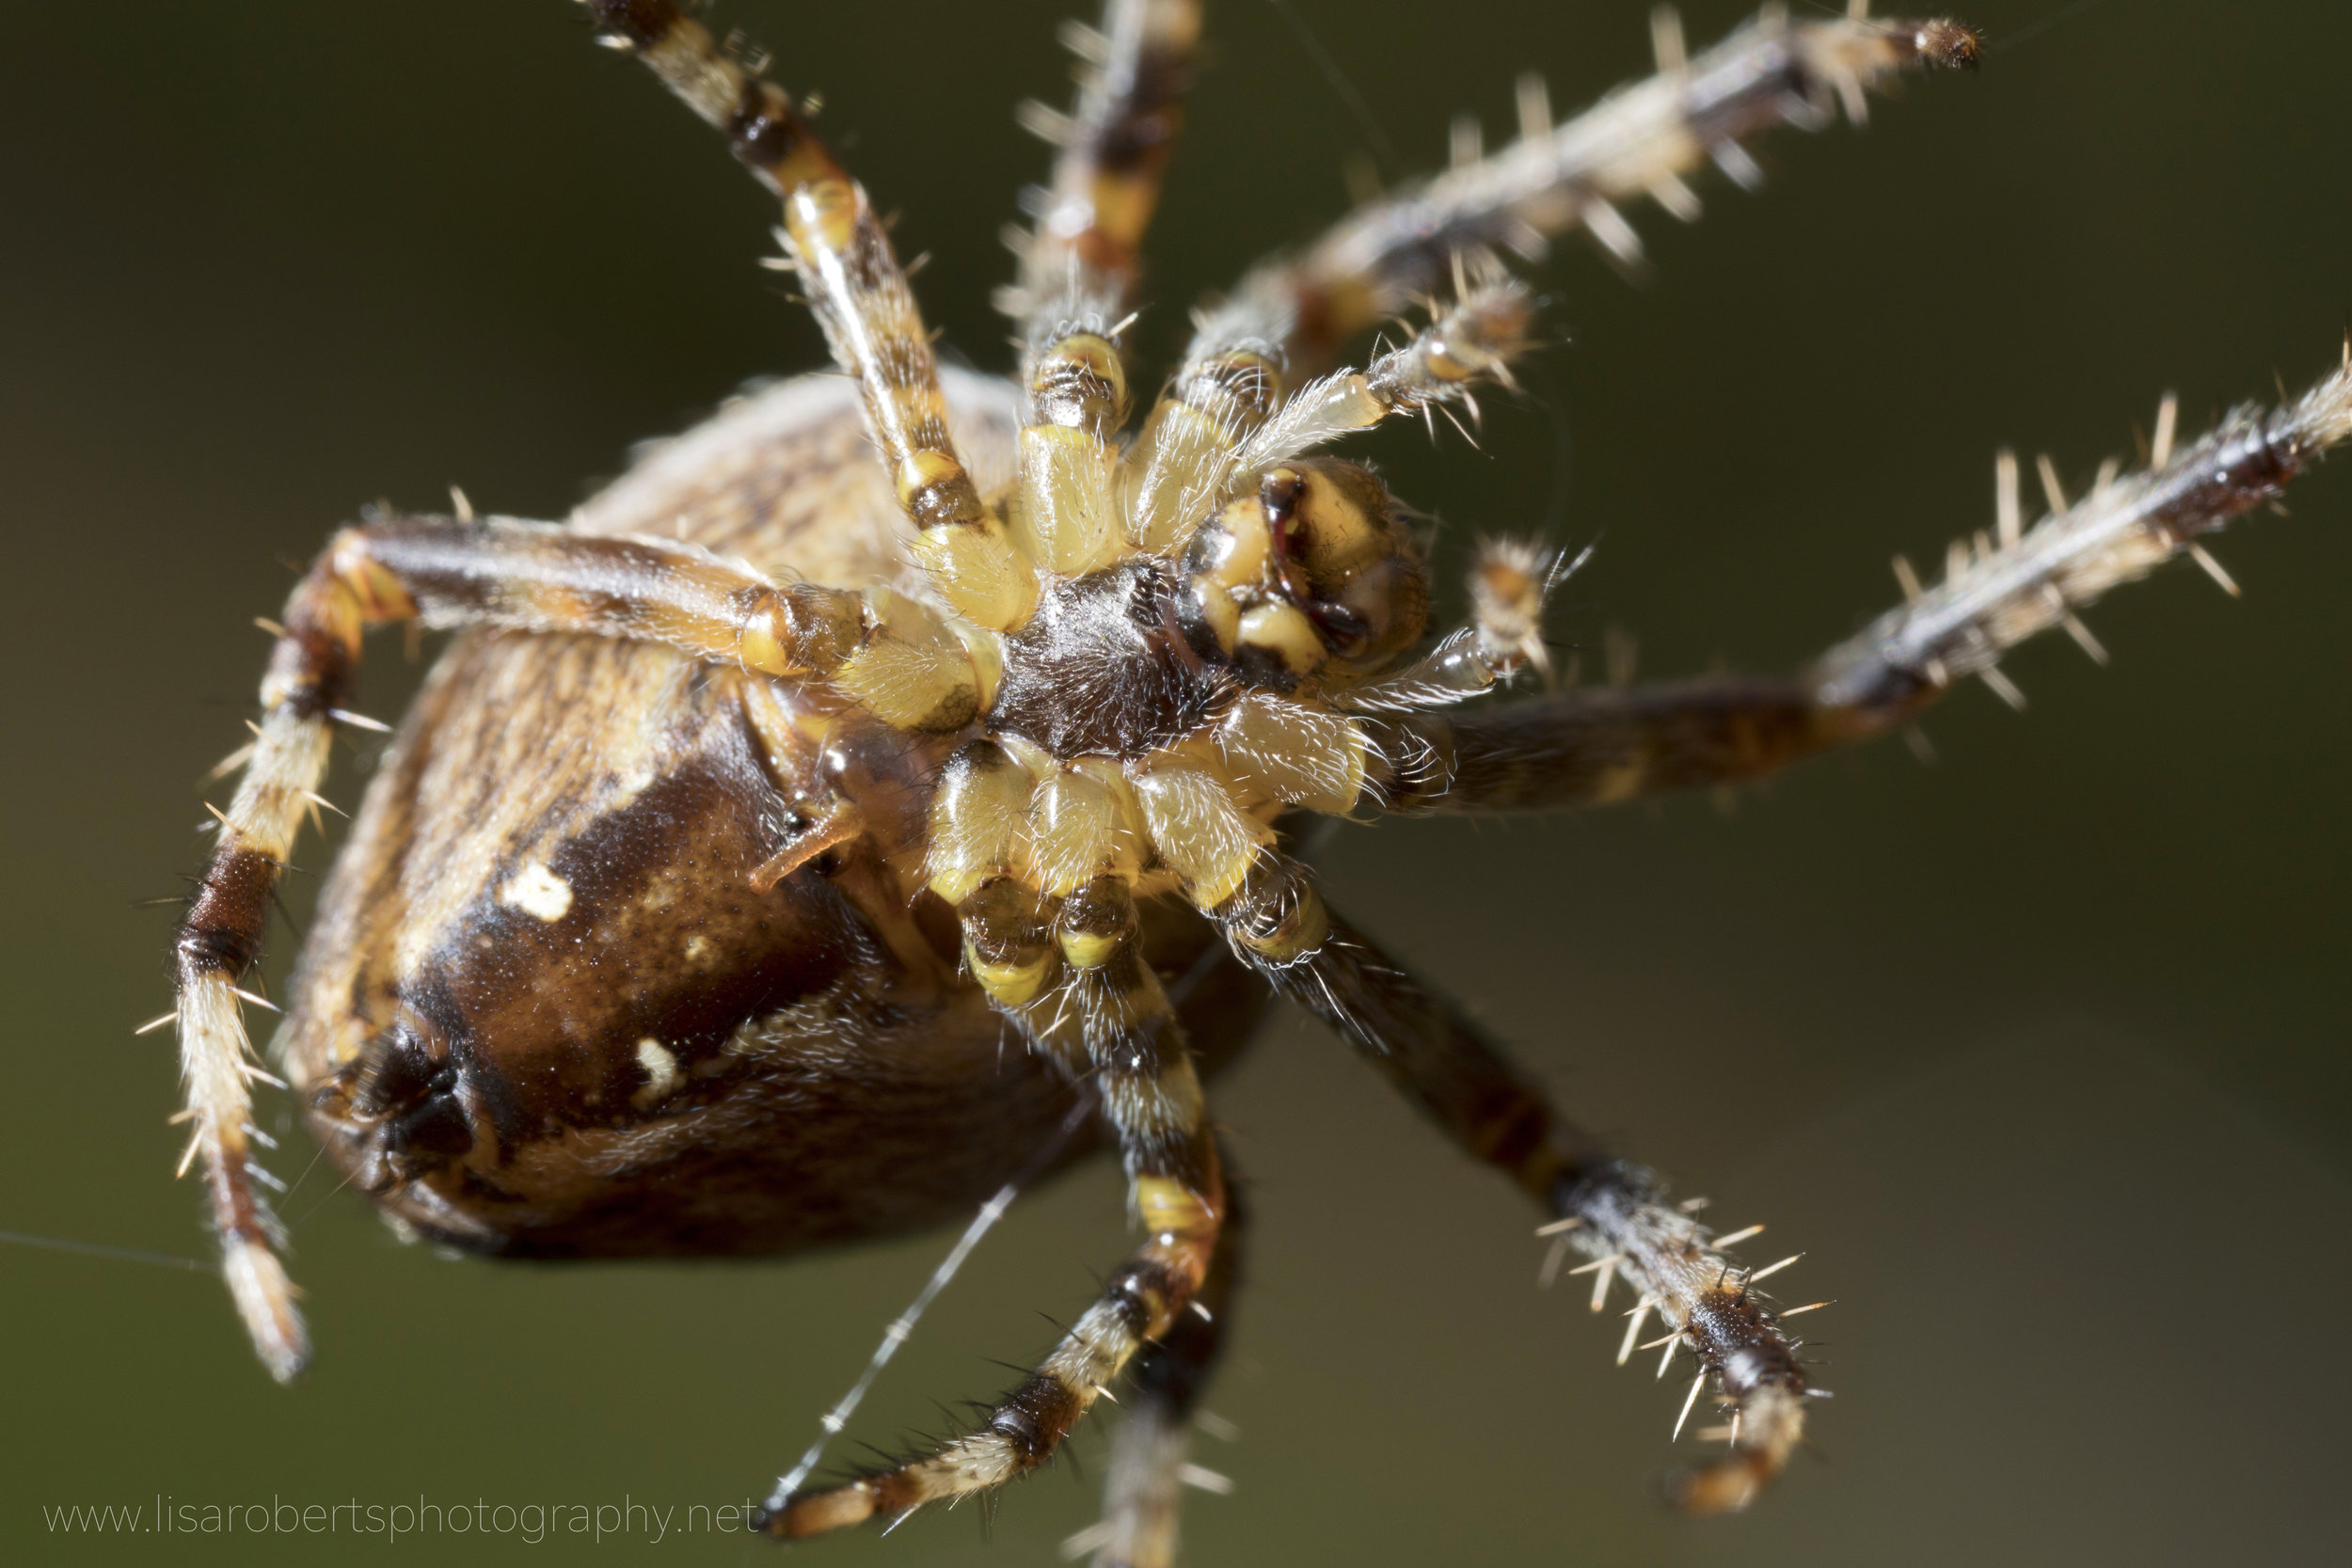  European Garden Spider abdomen, close up 